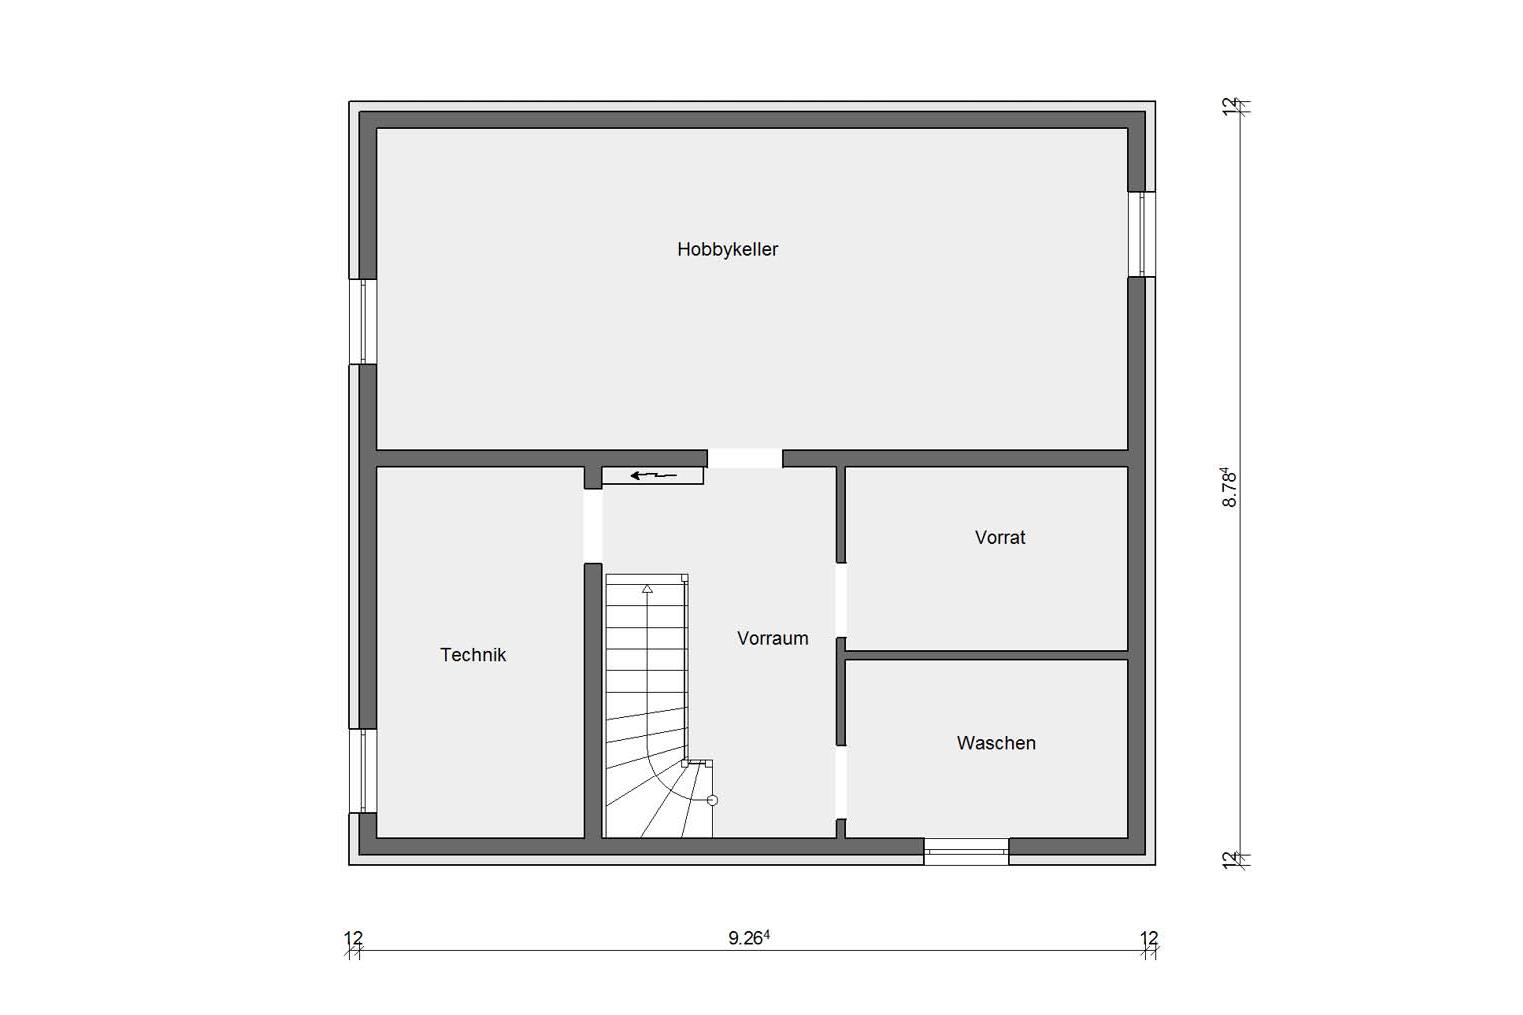 Pianta seminterrato E 15-143.8 Casa prefabbricata country house in stile scandinavo 